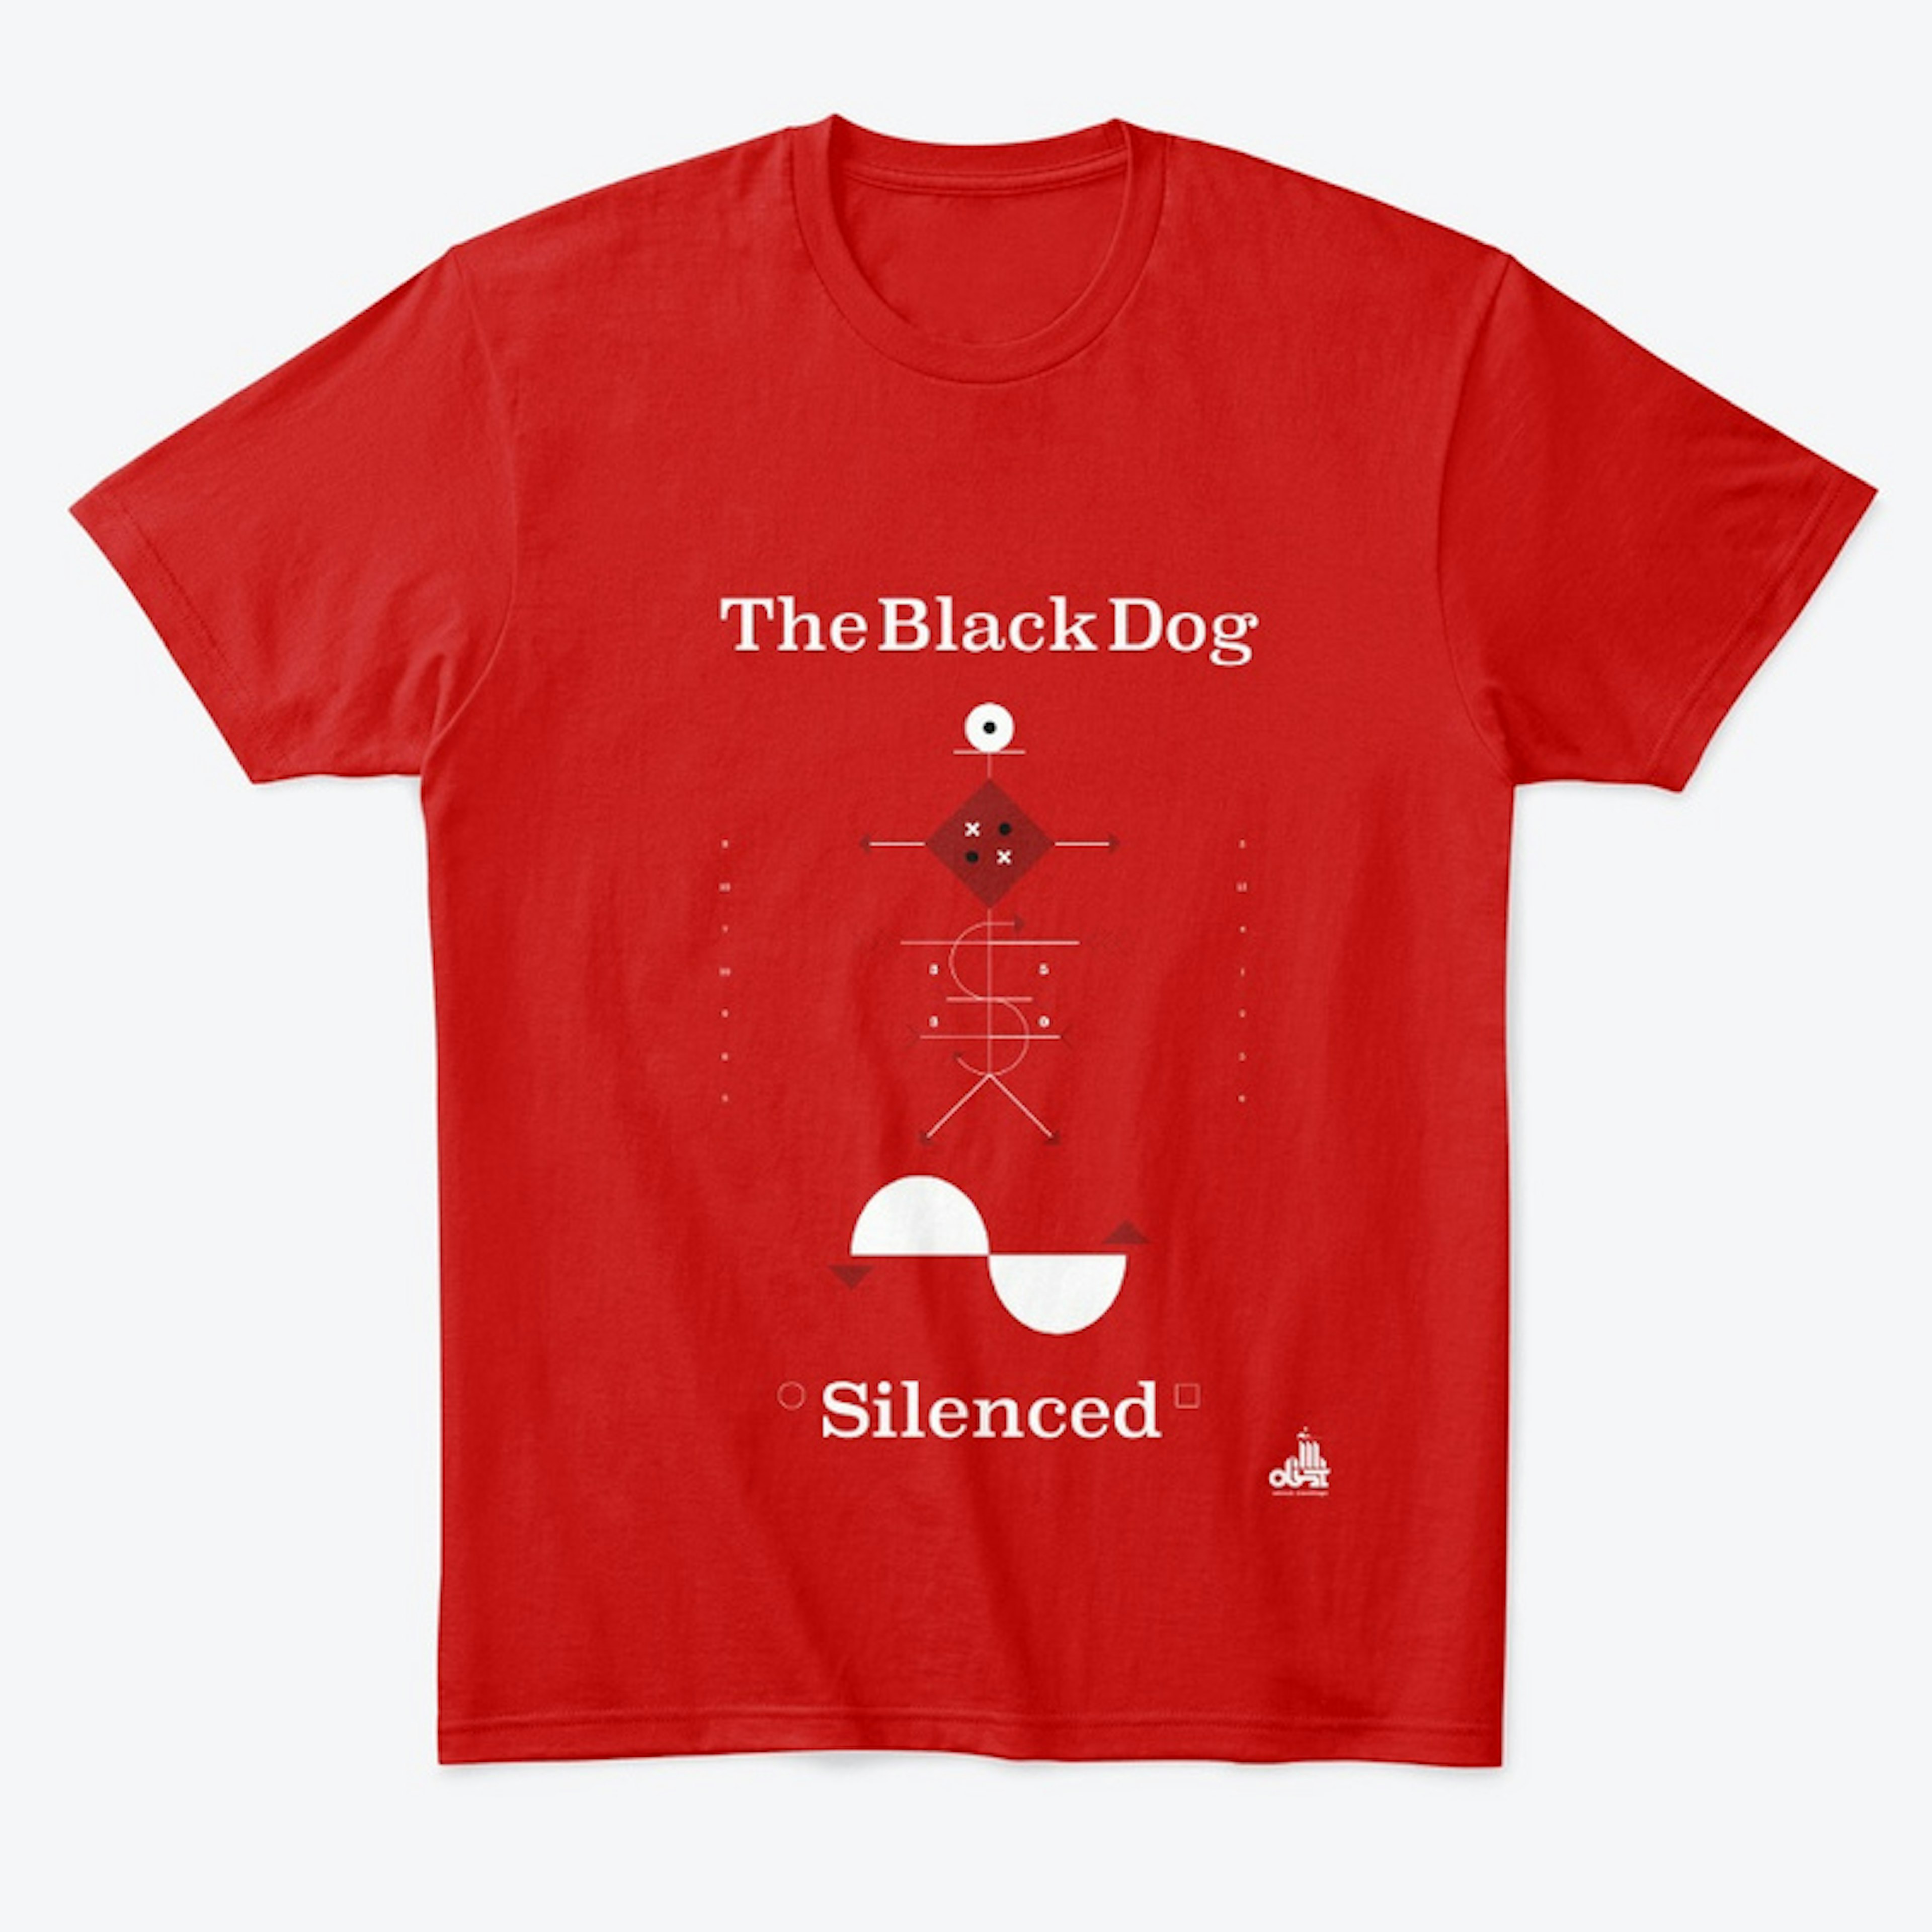 The Black Dog - Silenced